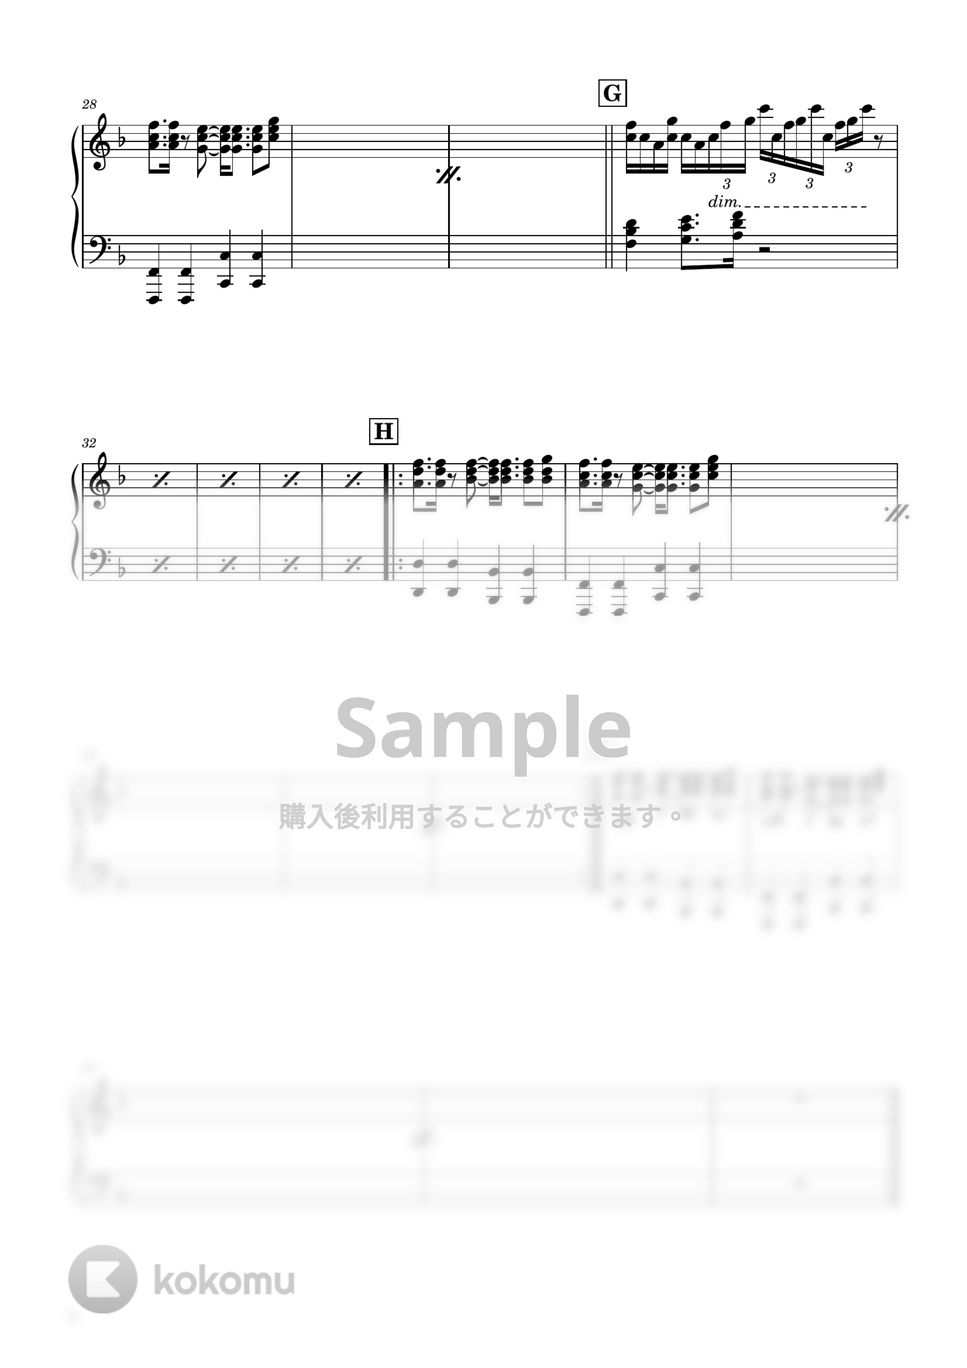 Orangestar - Surges (ピアノパート) by Ray